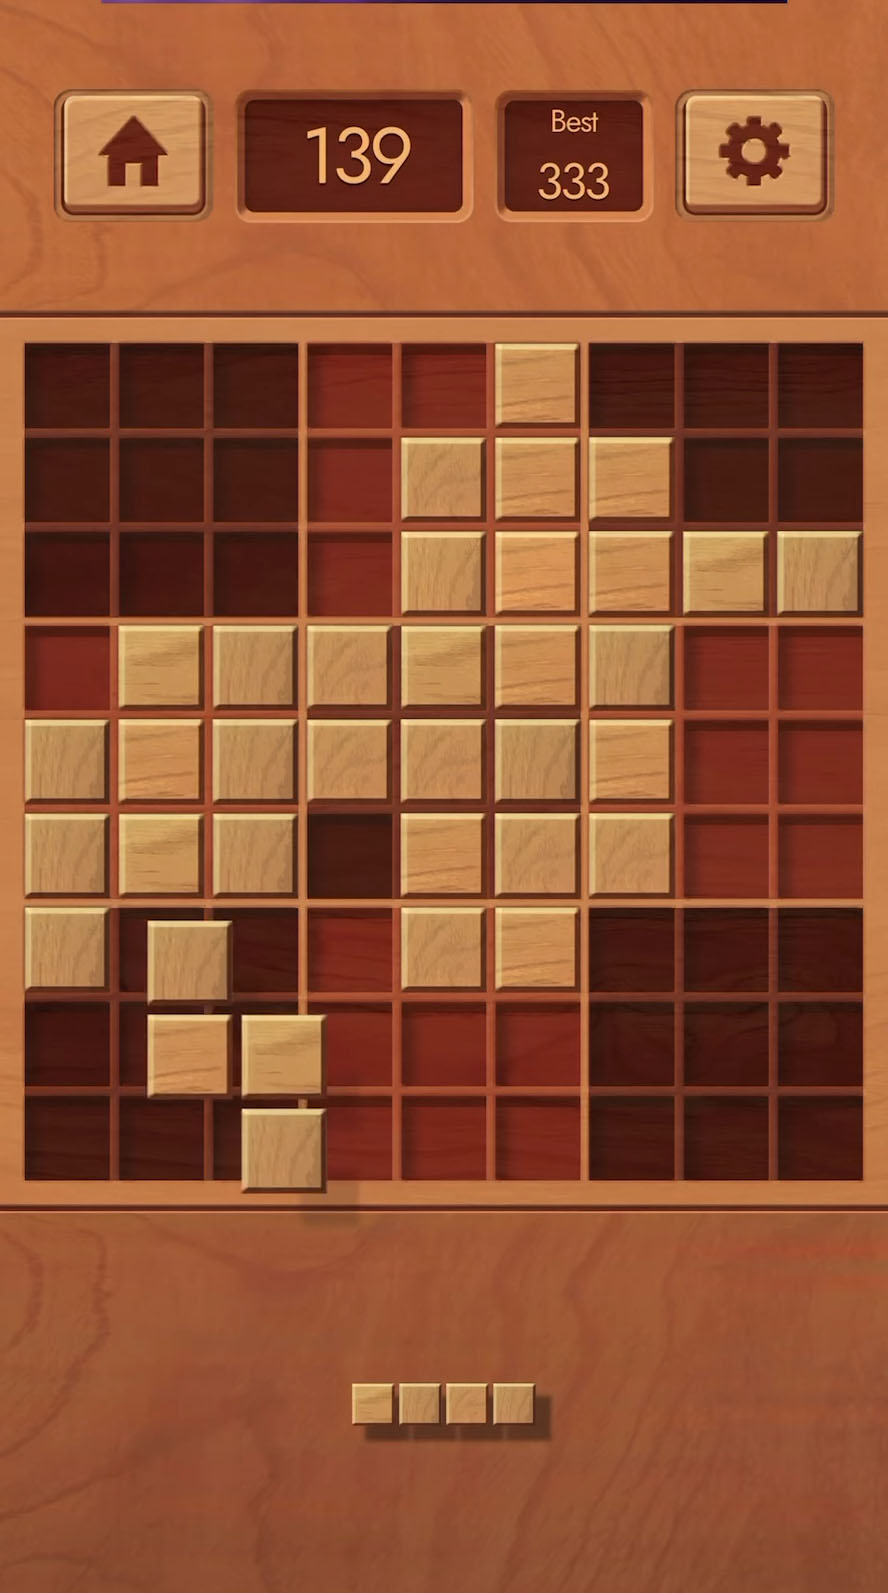 Woodoku - Wood Block Puzzles - Android game screenshots.